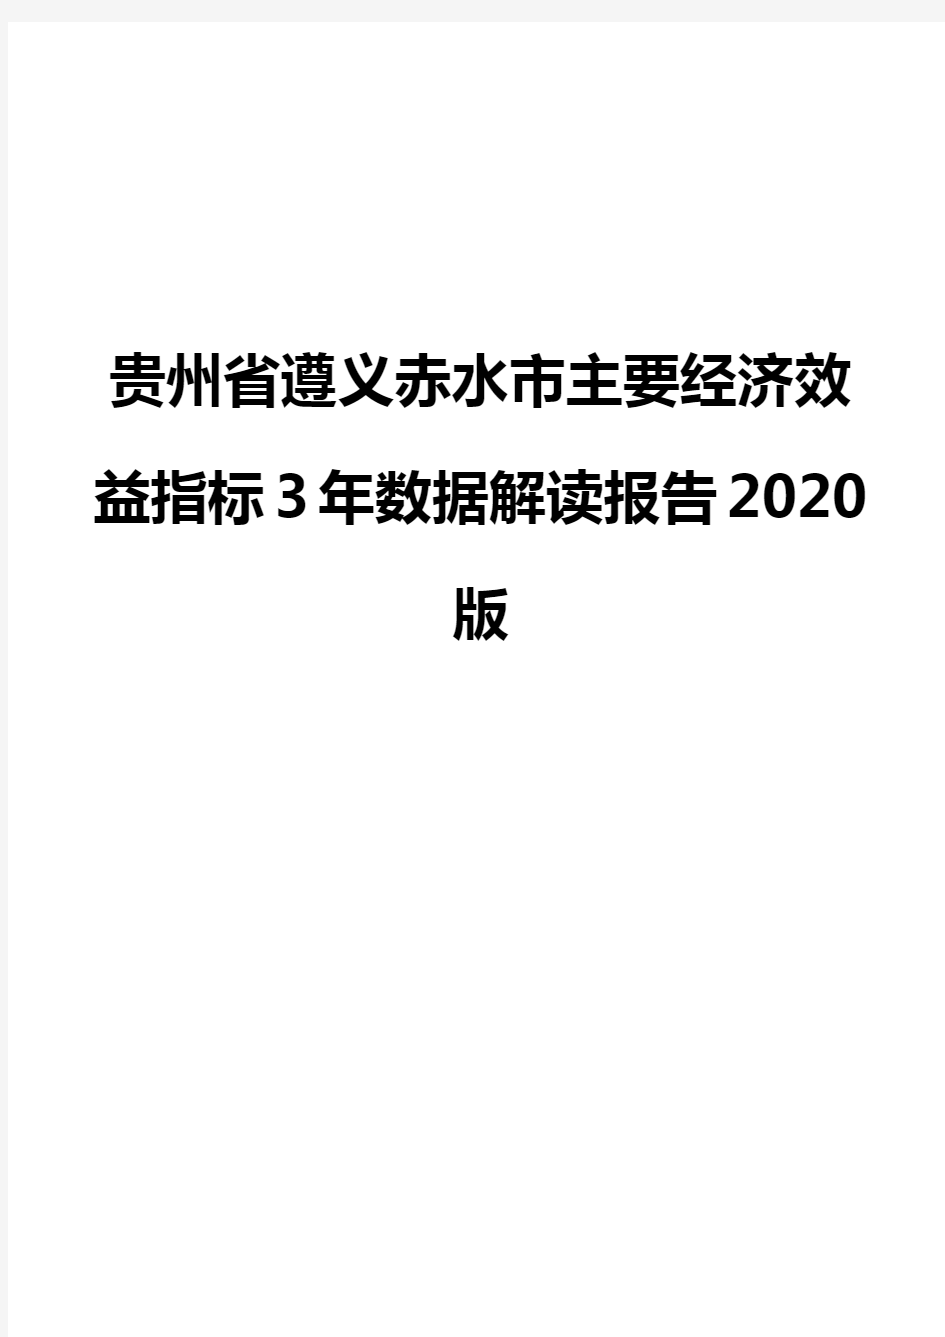 贵州省遵义赤水市主要经济效益指标3年数据解读报告2020版